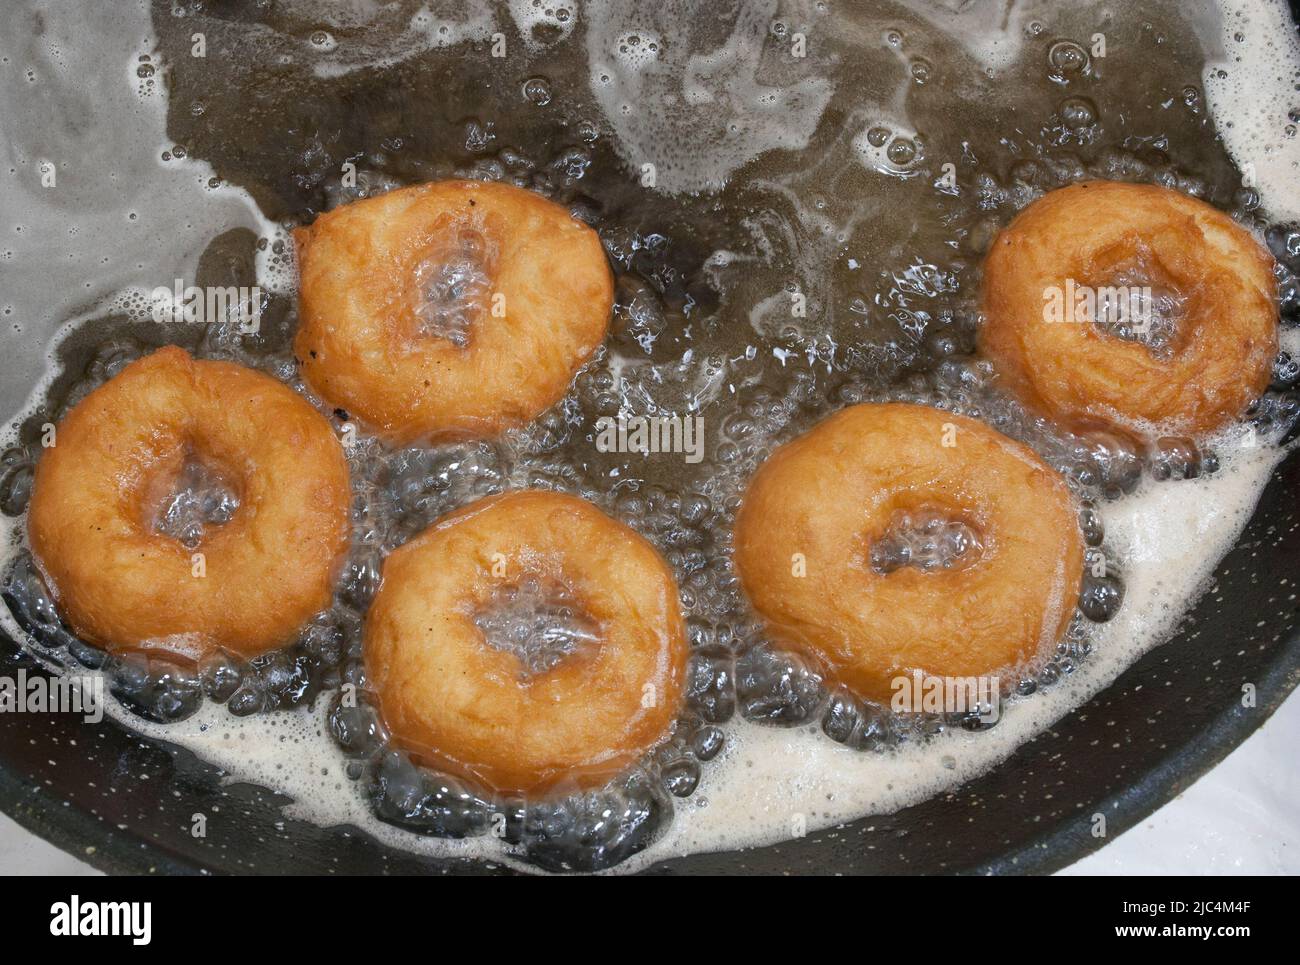 Verarbeitung von typisch spanischen frittierten Donuts oder Roscas Fritas. Ansicht von oben Stockfoto